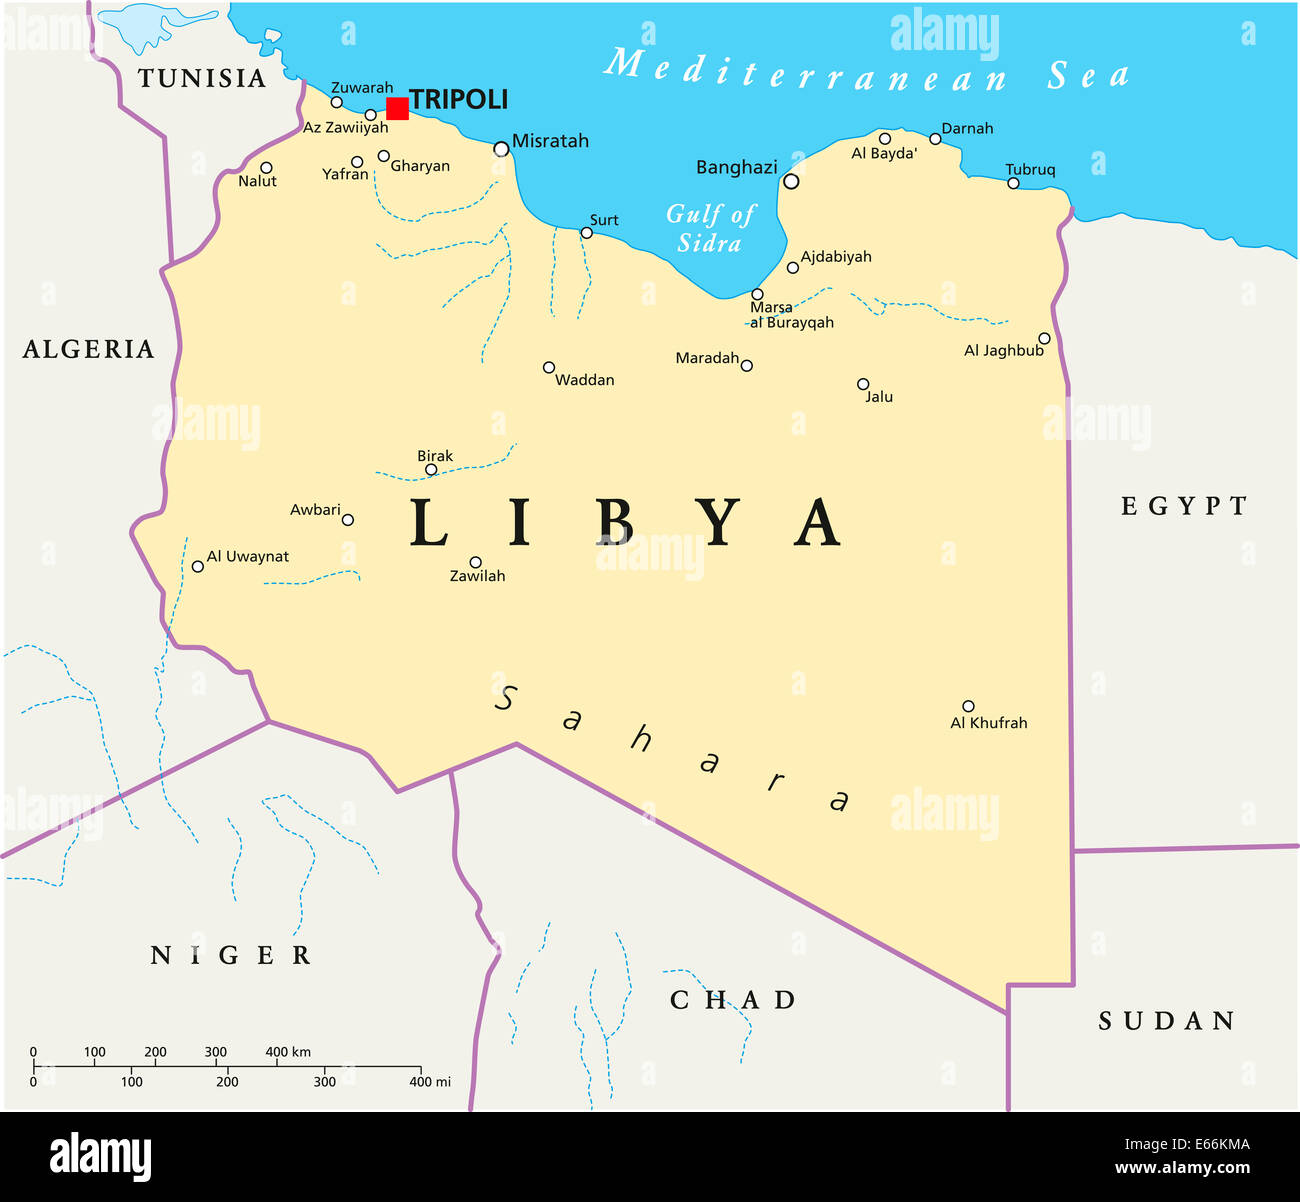 Mappa libia immagini e fotografie stock ad alta risoluzione - Alamy